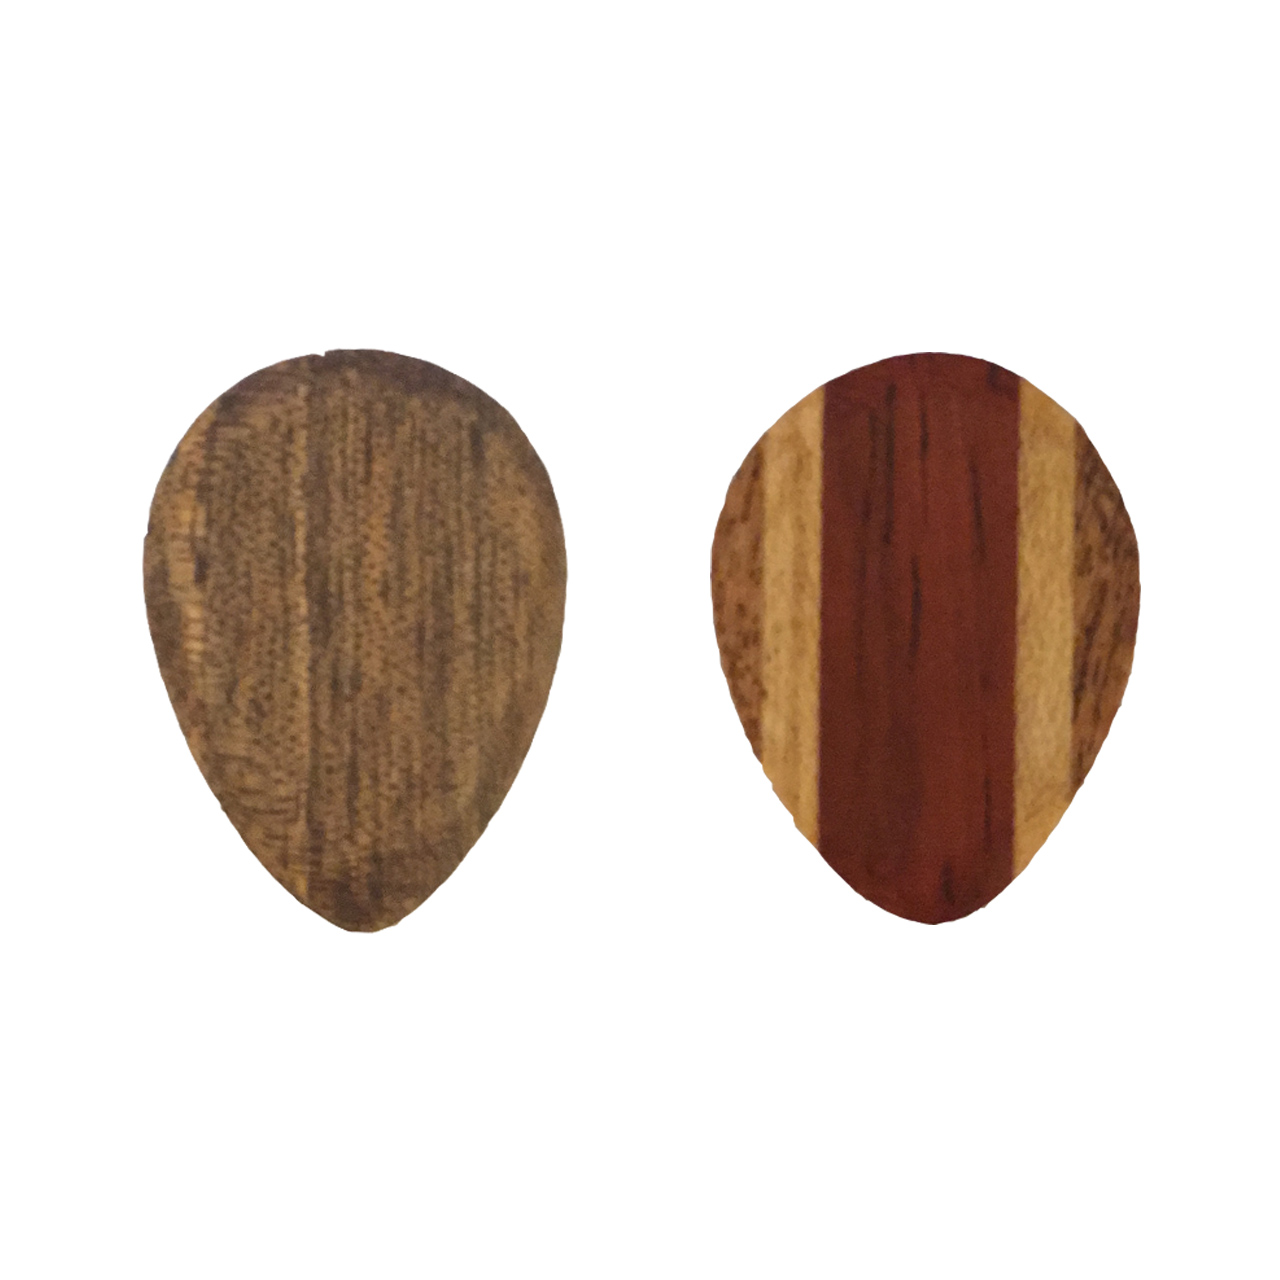 پیک چوبی  افرافر پادوک کهور ترکیبی و گردو  چوپیک طرح اشکی بسته 2 عددی